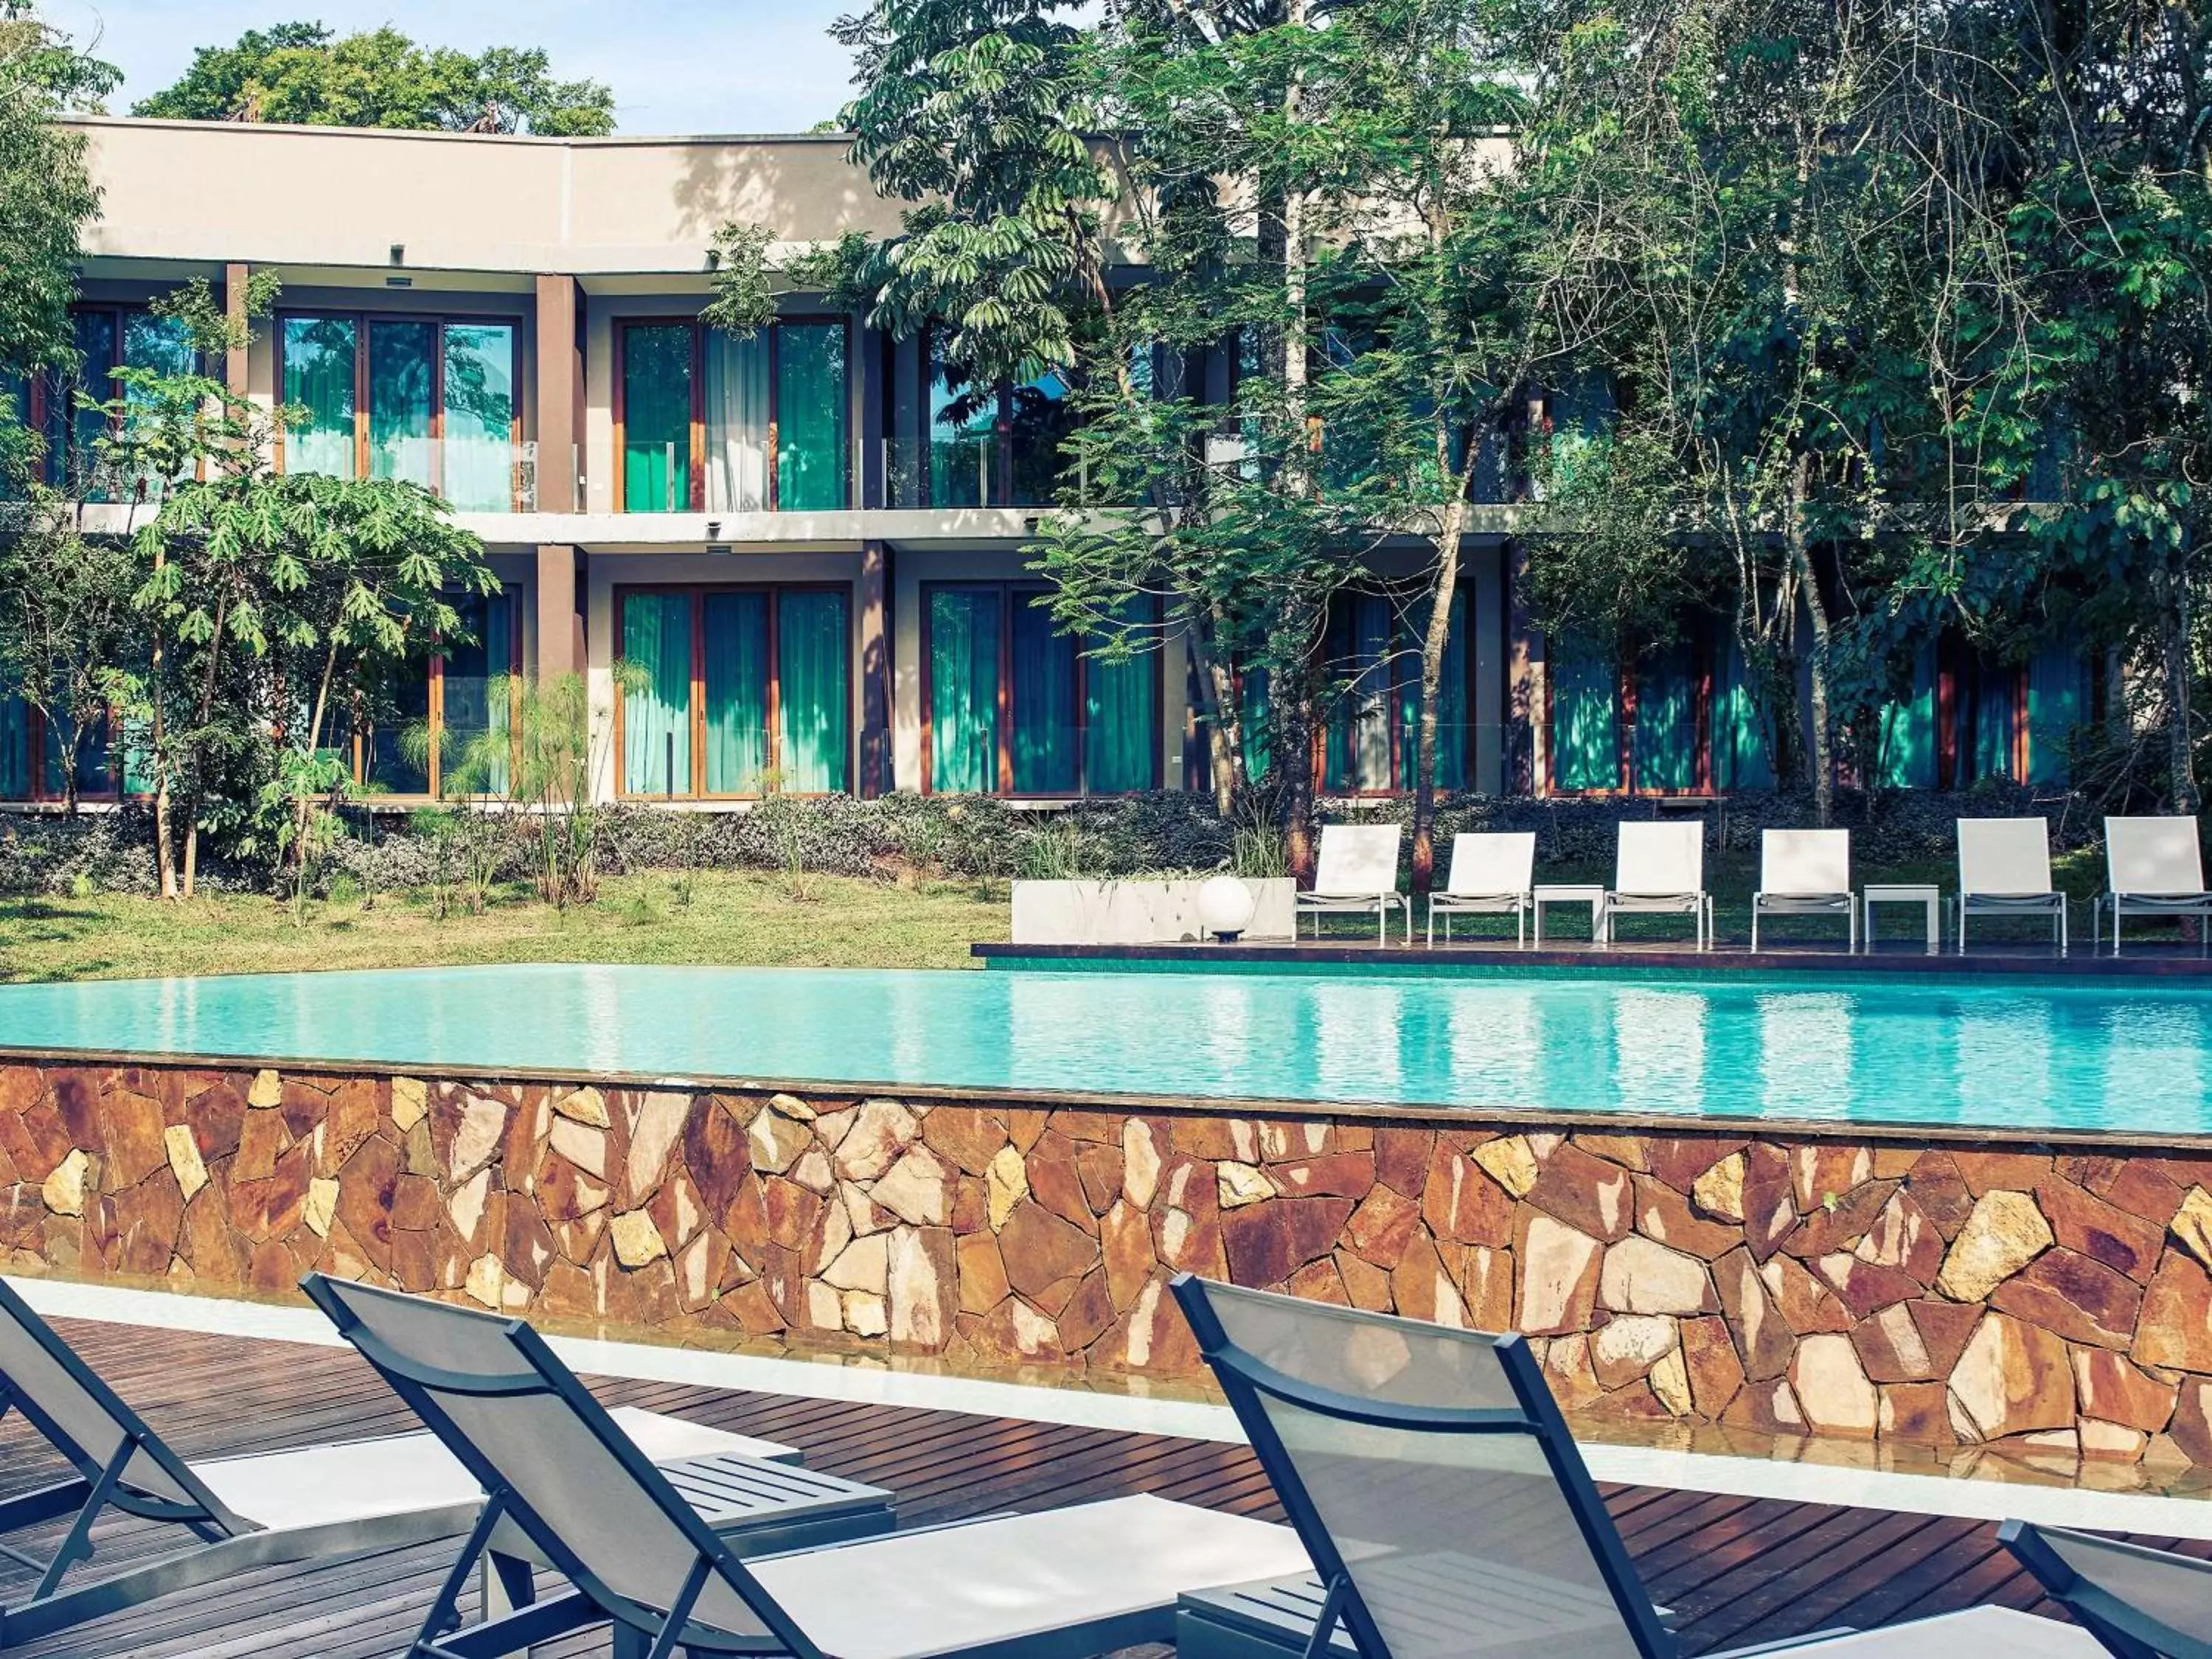 Property building, Swimming Pool in Mercure Iguazu Hotel Iru